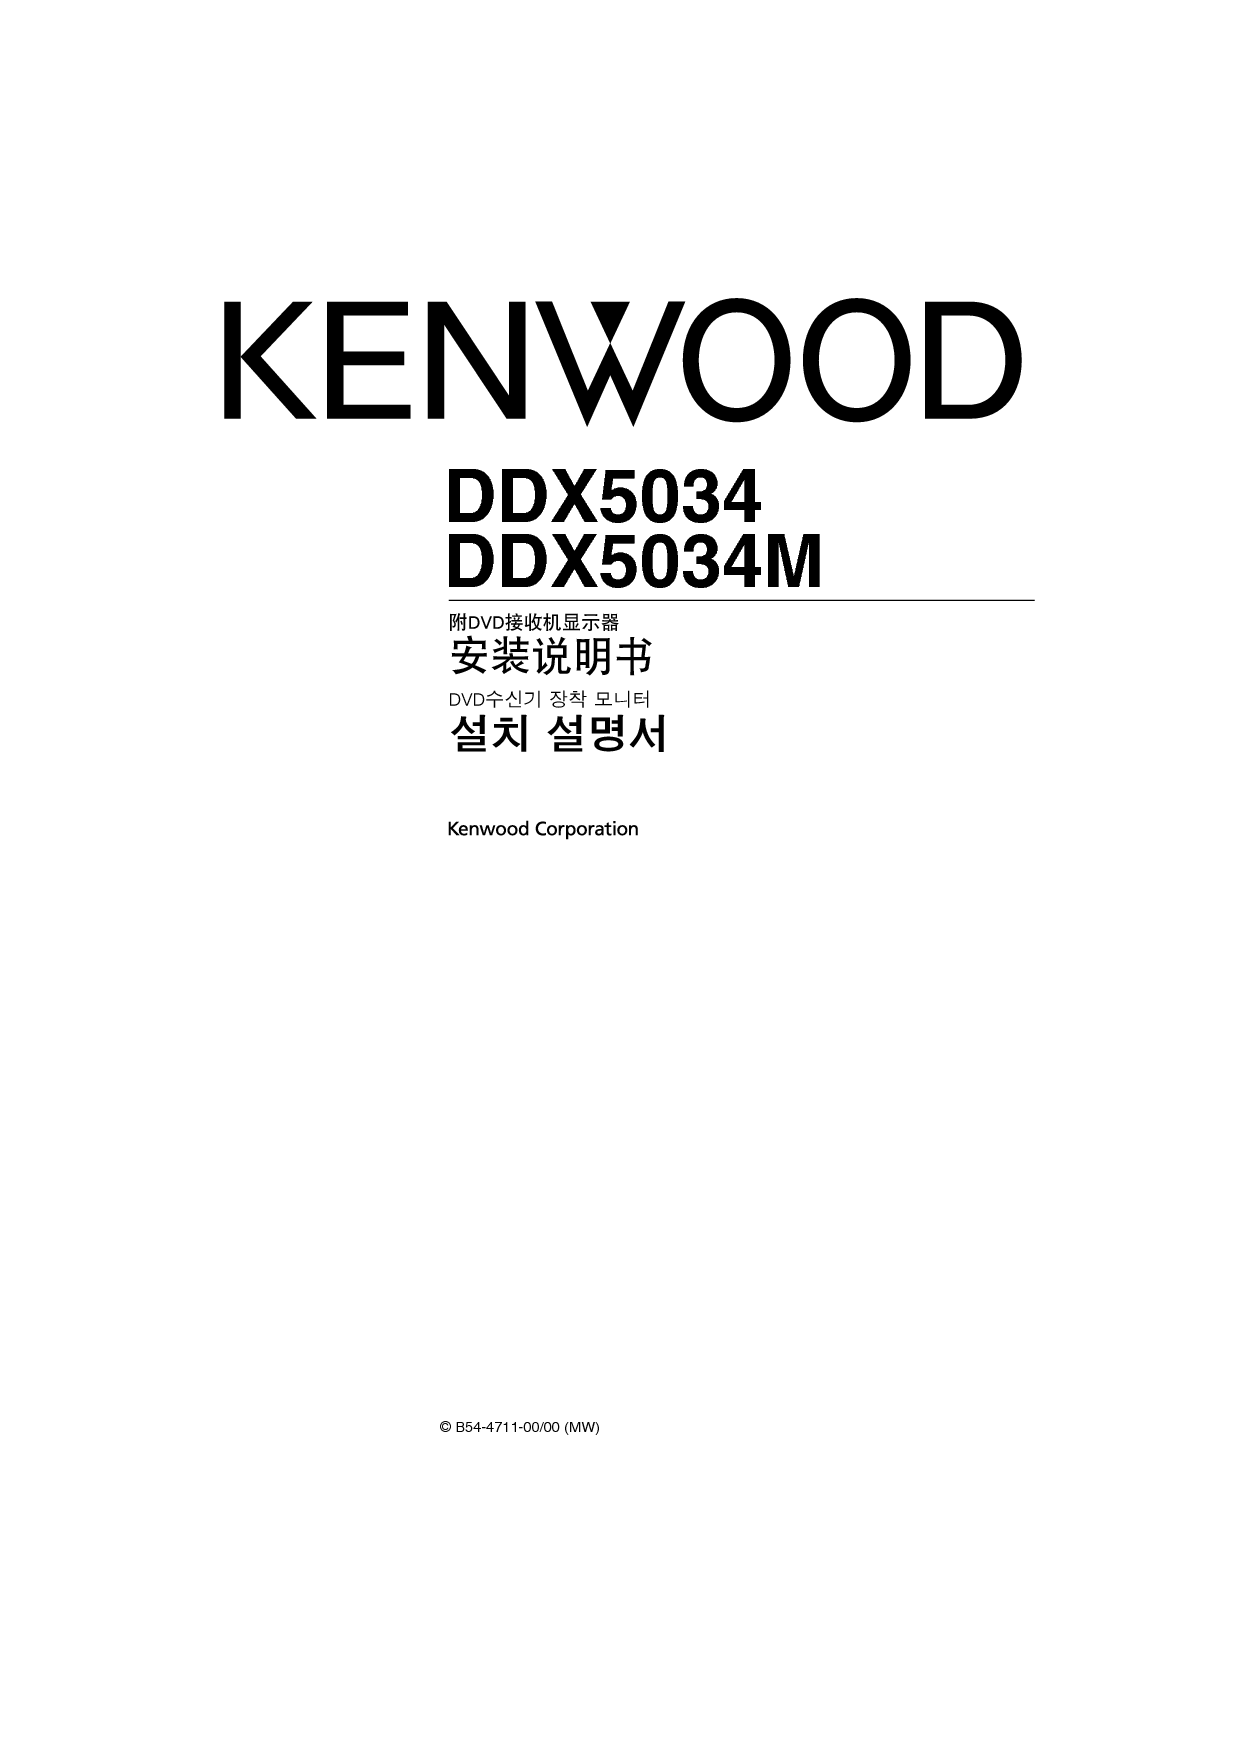 建伍 Kenwood DDX5034 安装说明 封面